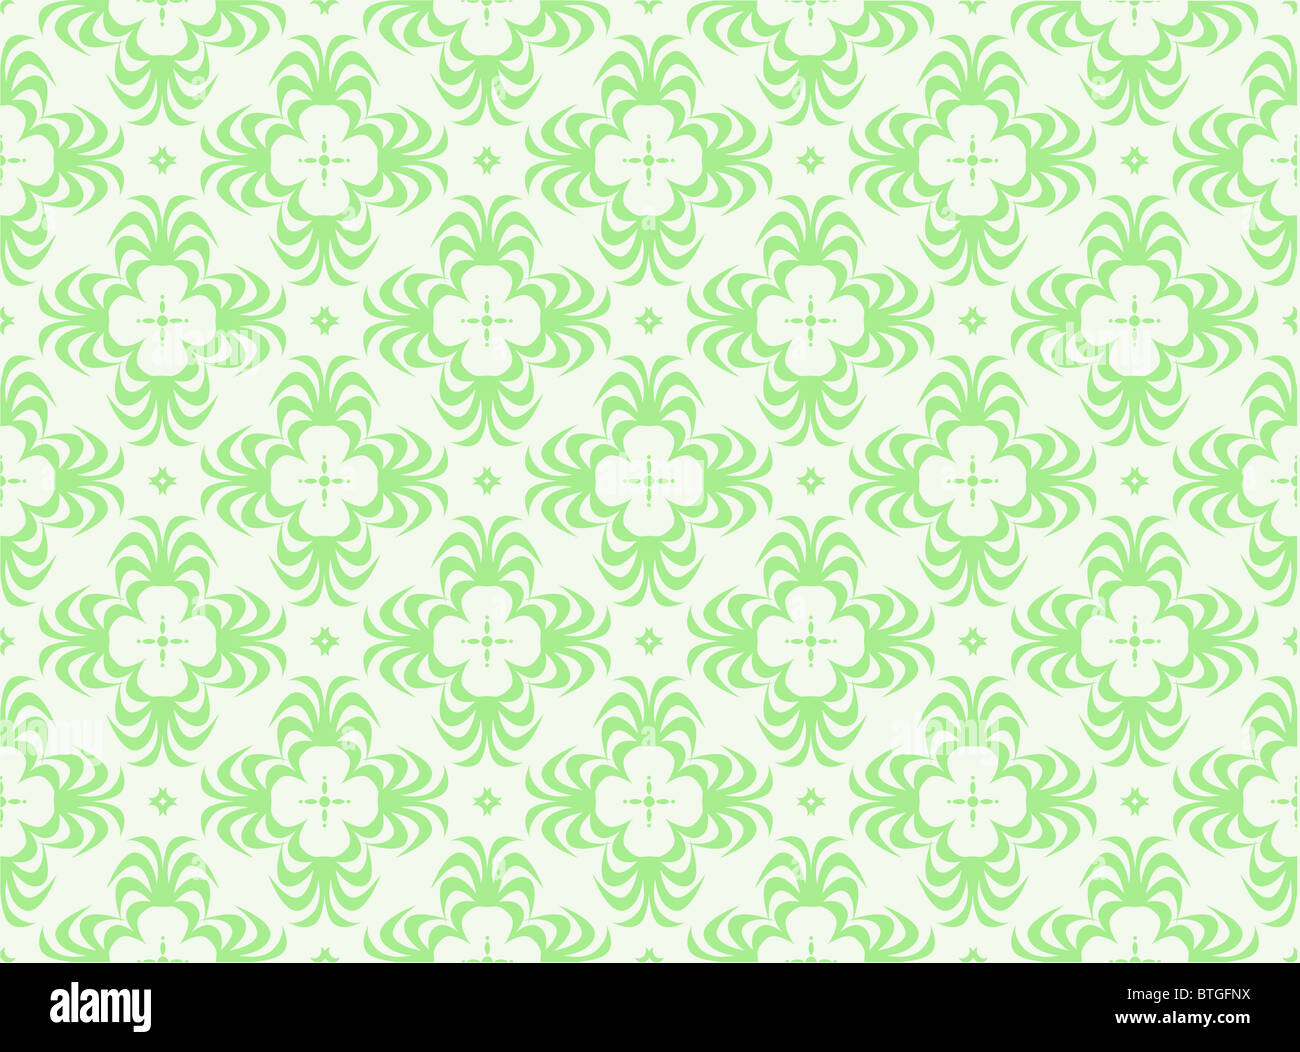 Illustrierte grün Retrotapeten mit sich wiederholenden Muster Stockfoto